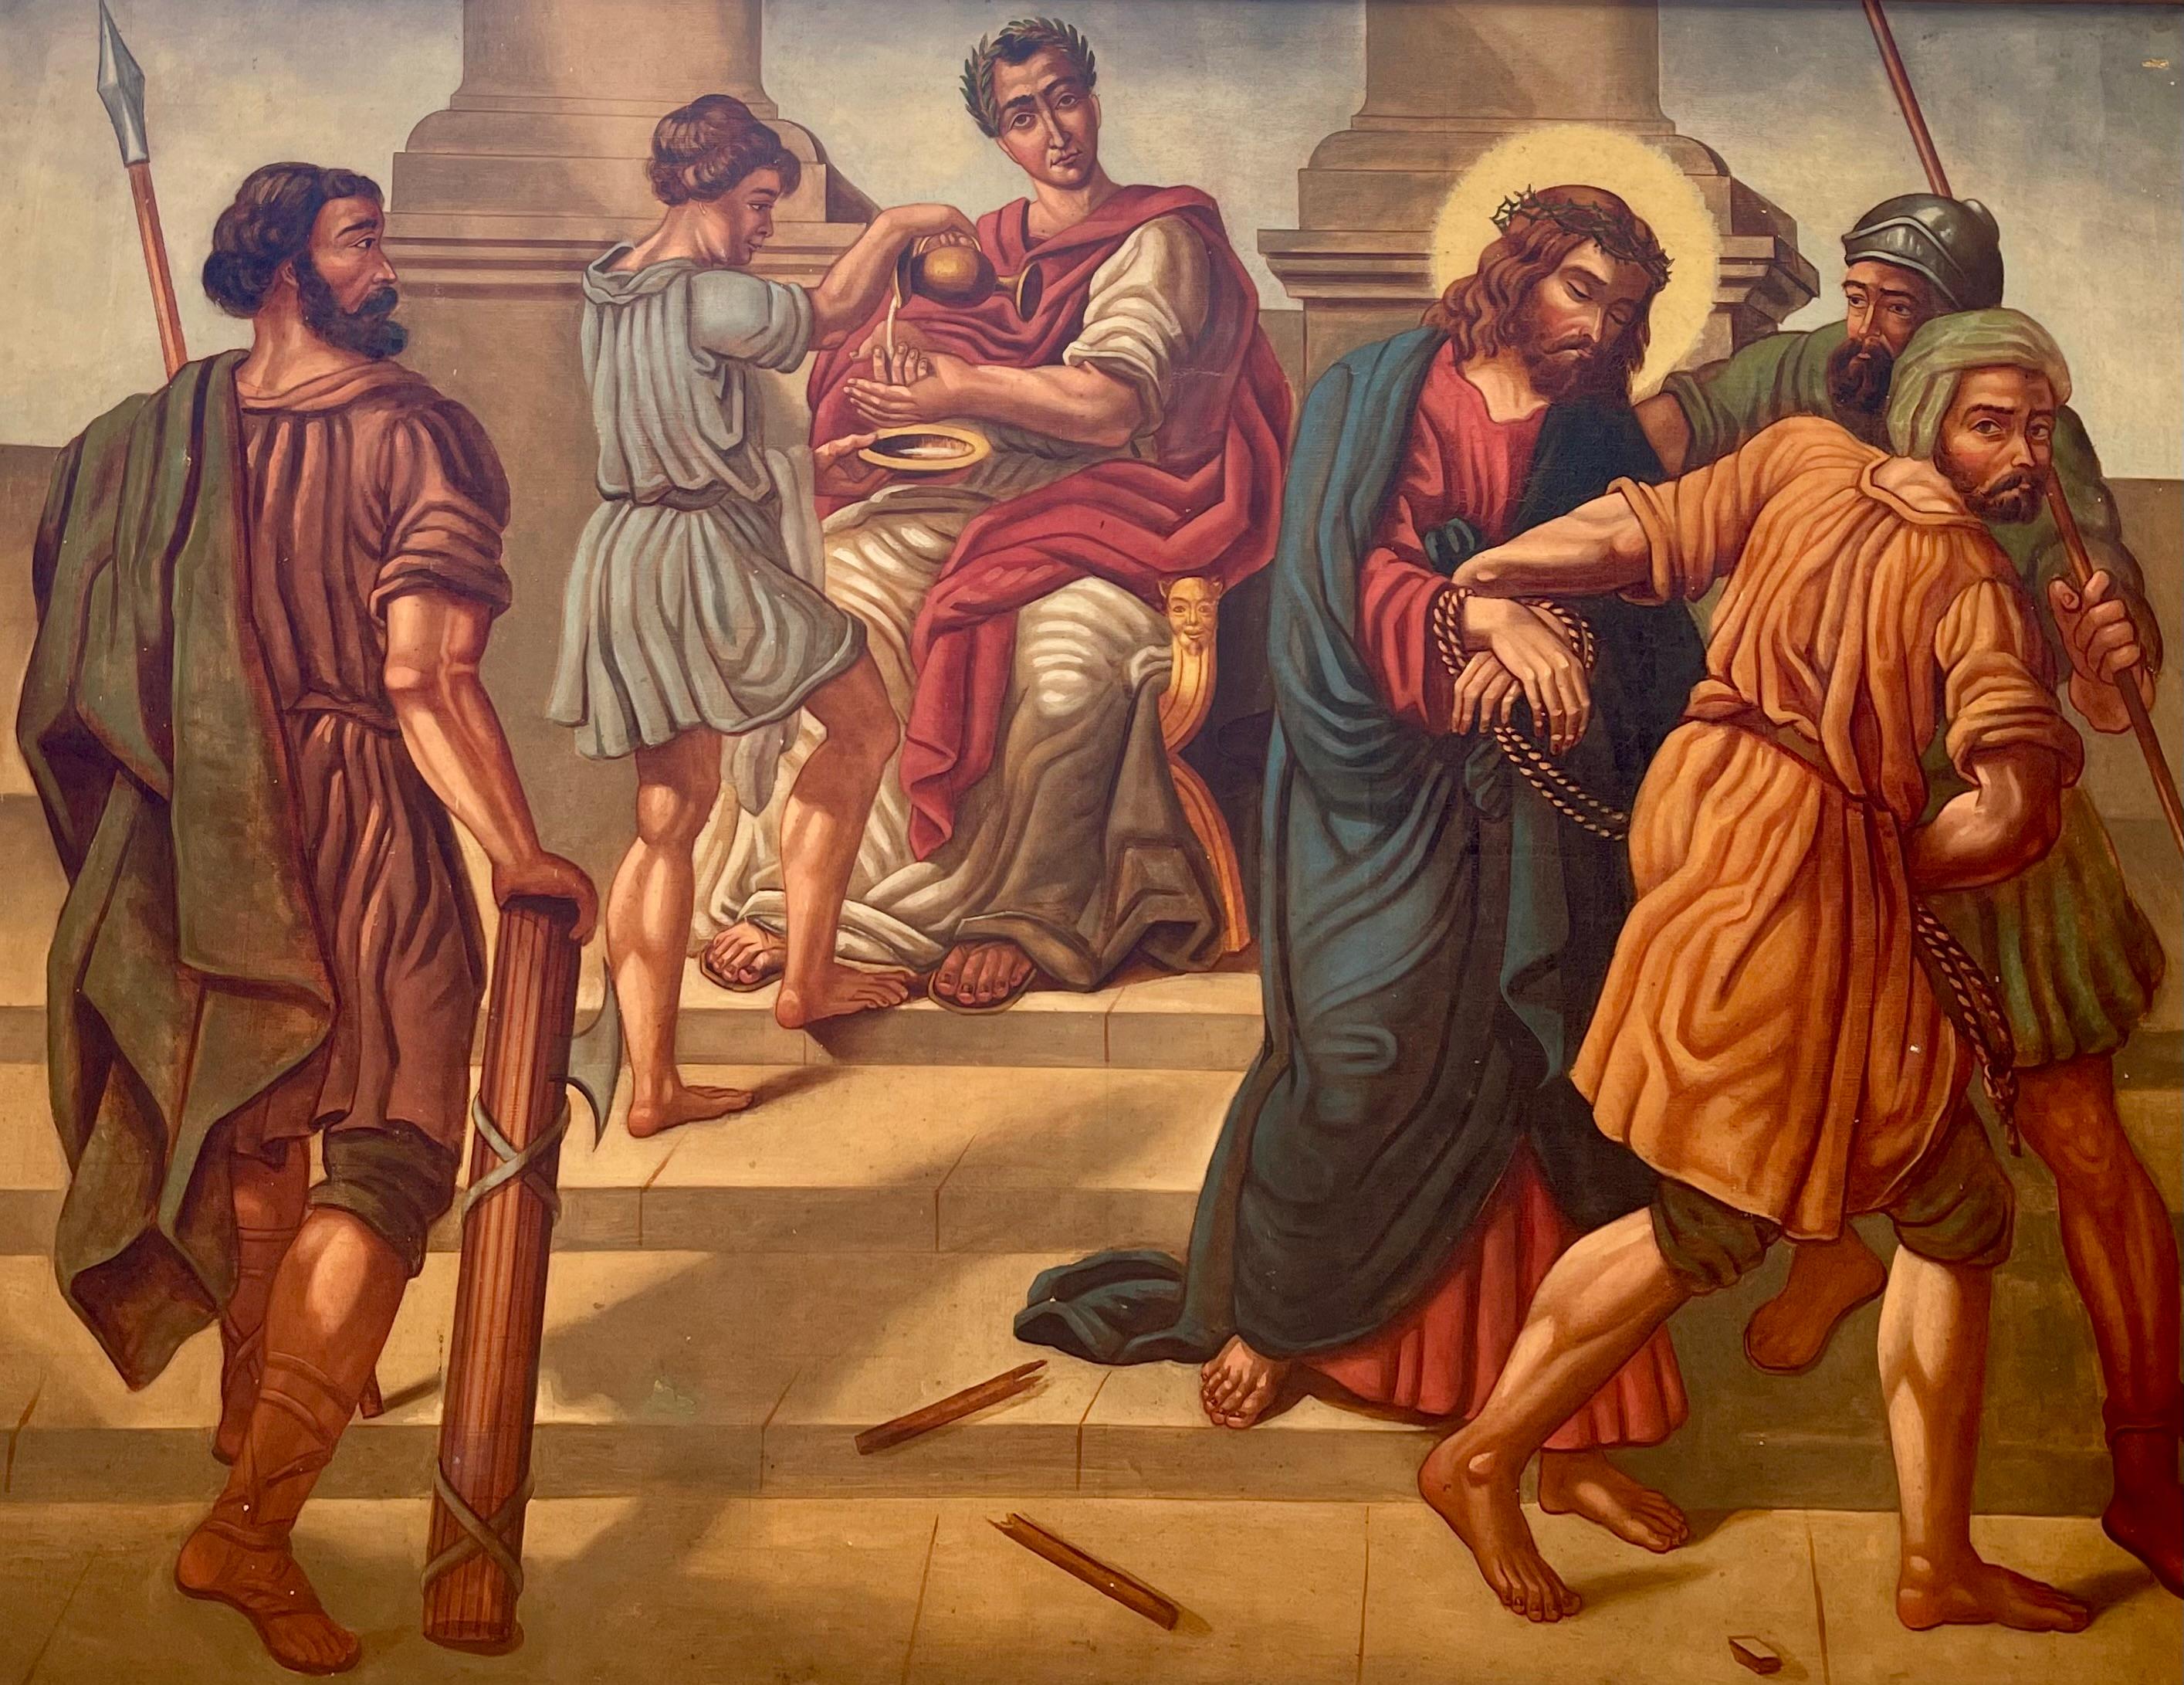 Dieses prächtige Gemälde aus dem 19. Jahrhundert stellt den ersten Akt der christlichen Reise dar, die Verurteilung Jesu Christi durch Pontius Pilatus. Es zeichnet sich durch eine bemerkenswerte Detailgenauigkeit aus, die den Betrachter mitten in